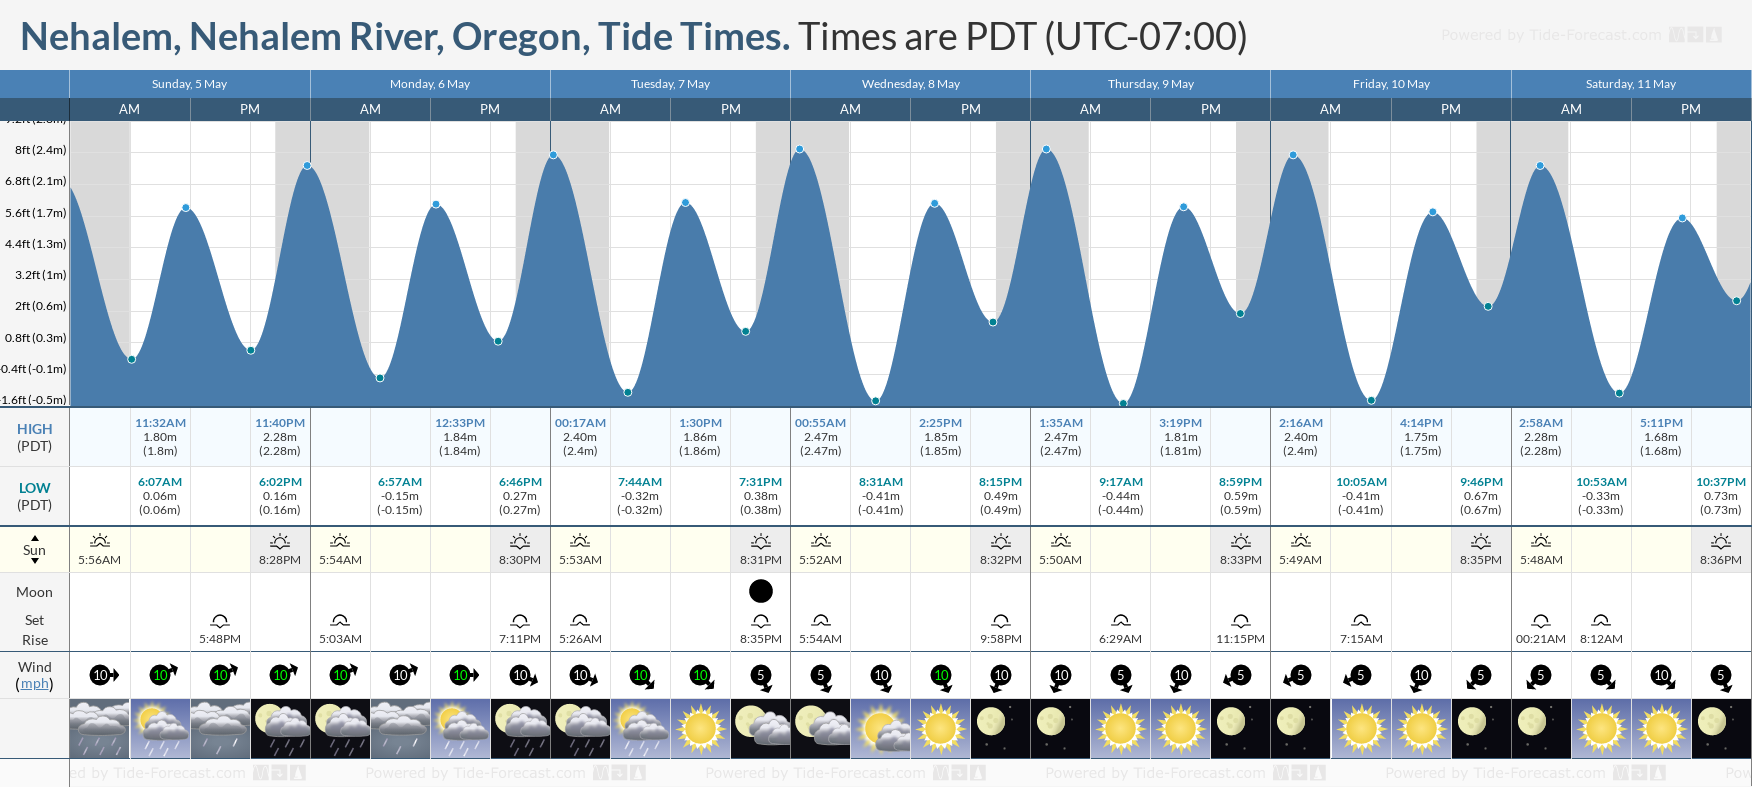 Nehalem, Nehalem River, Oregon Tide Chart including high and low tide tide times for the next 7 days